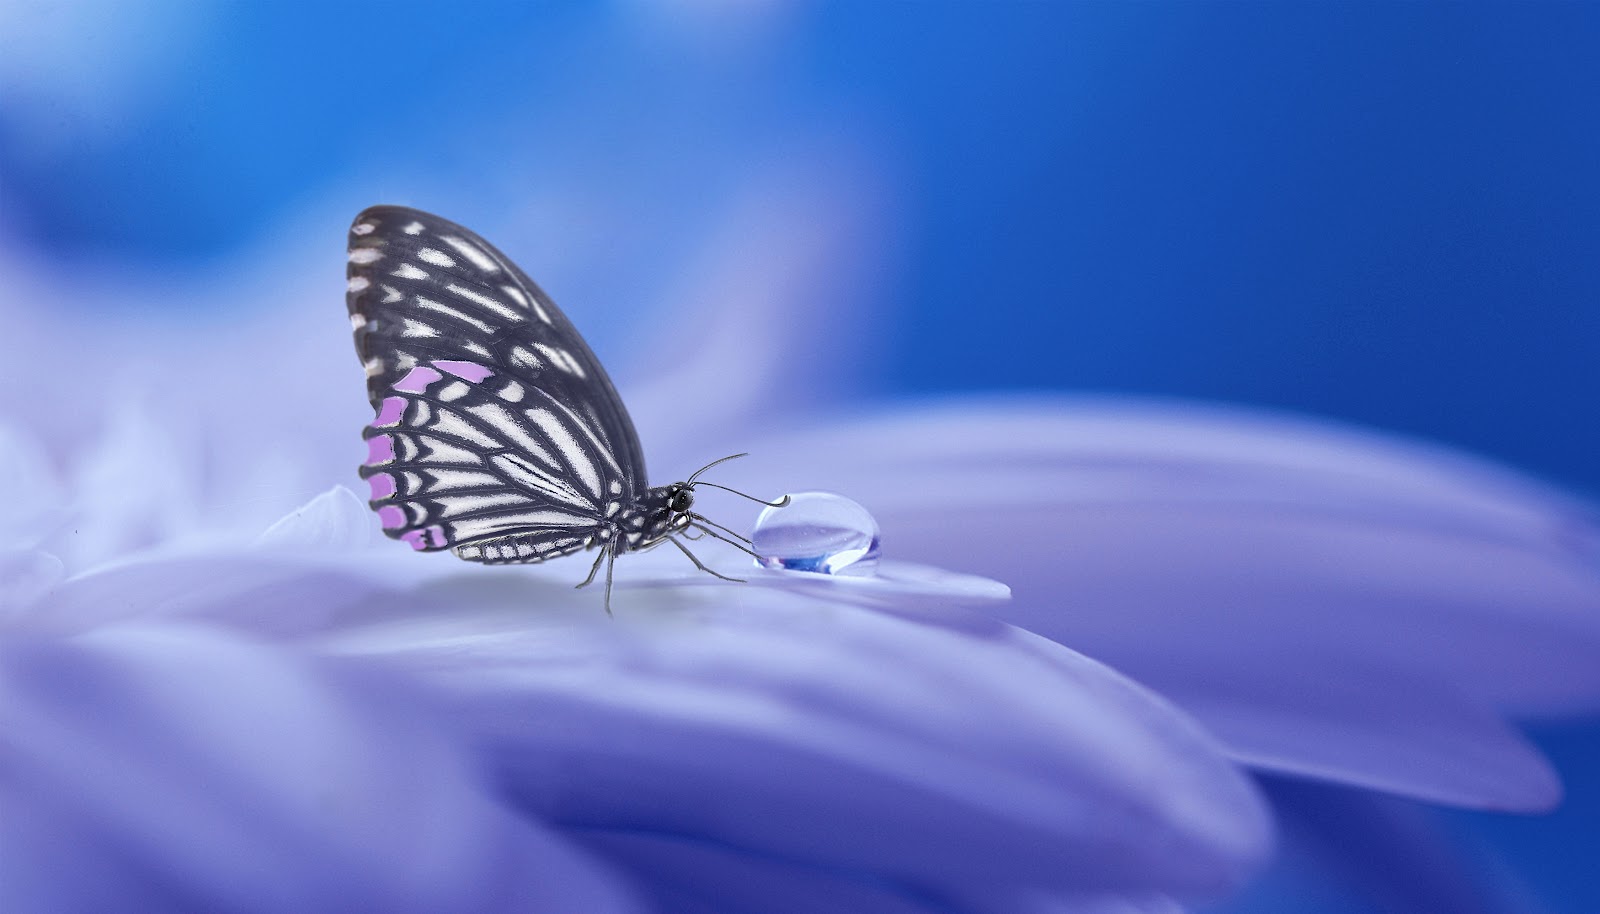 薄紫の花びらに留まって水滴に触れている一匹の蝶